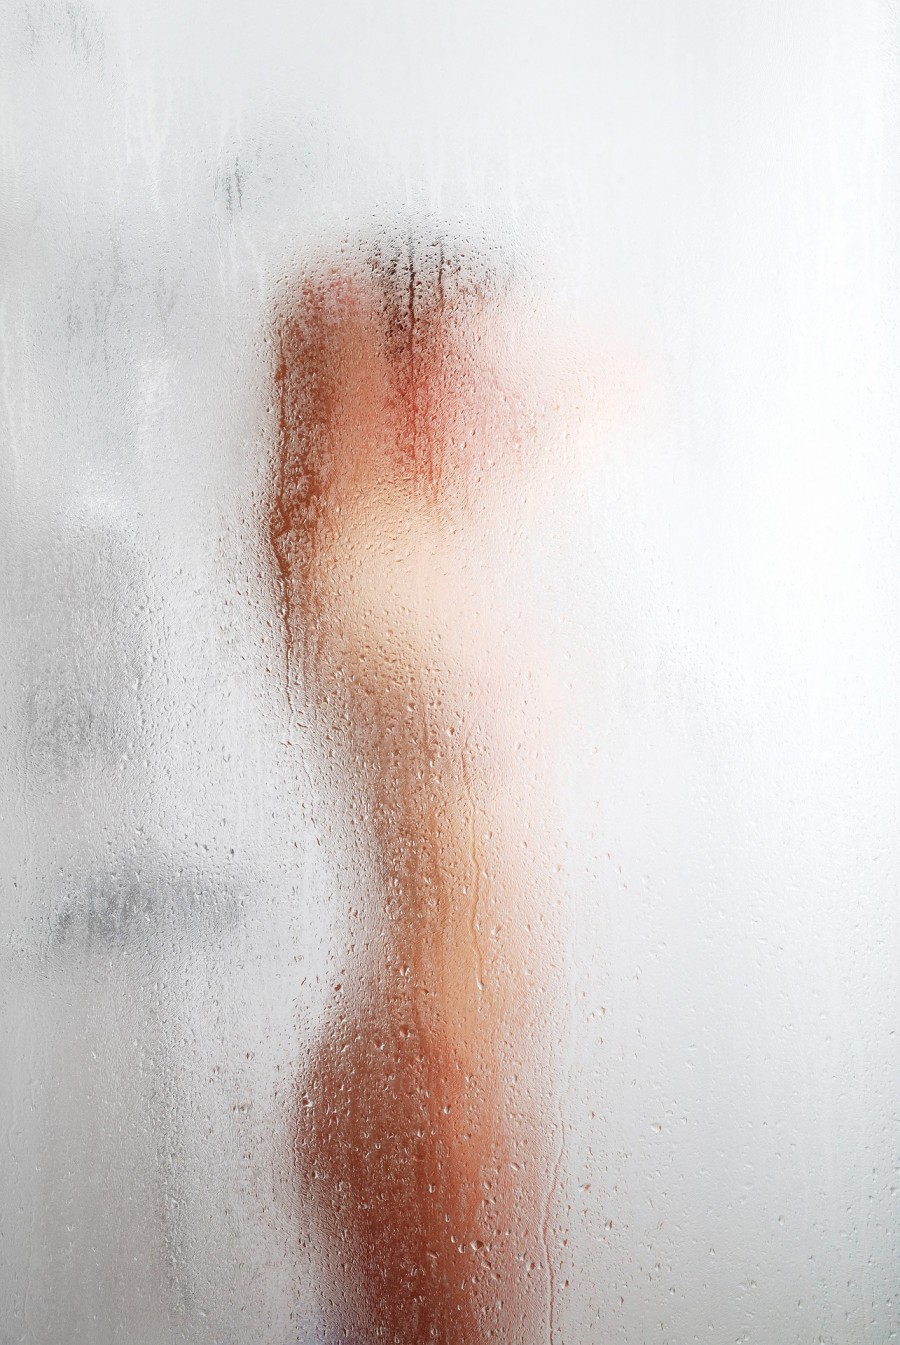 pixabay.com | Прохладная ванна или душ